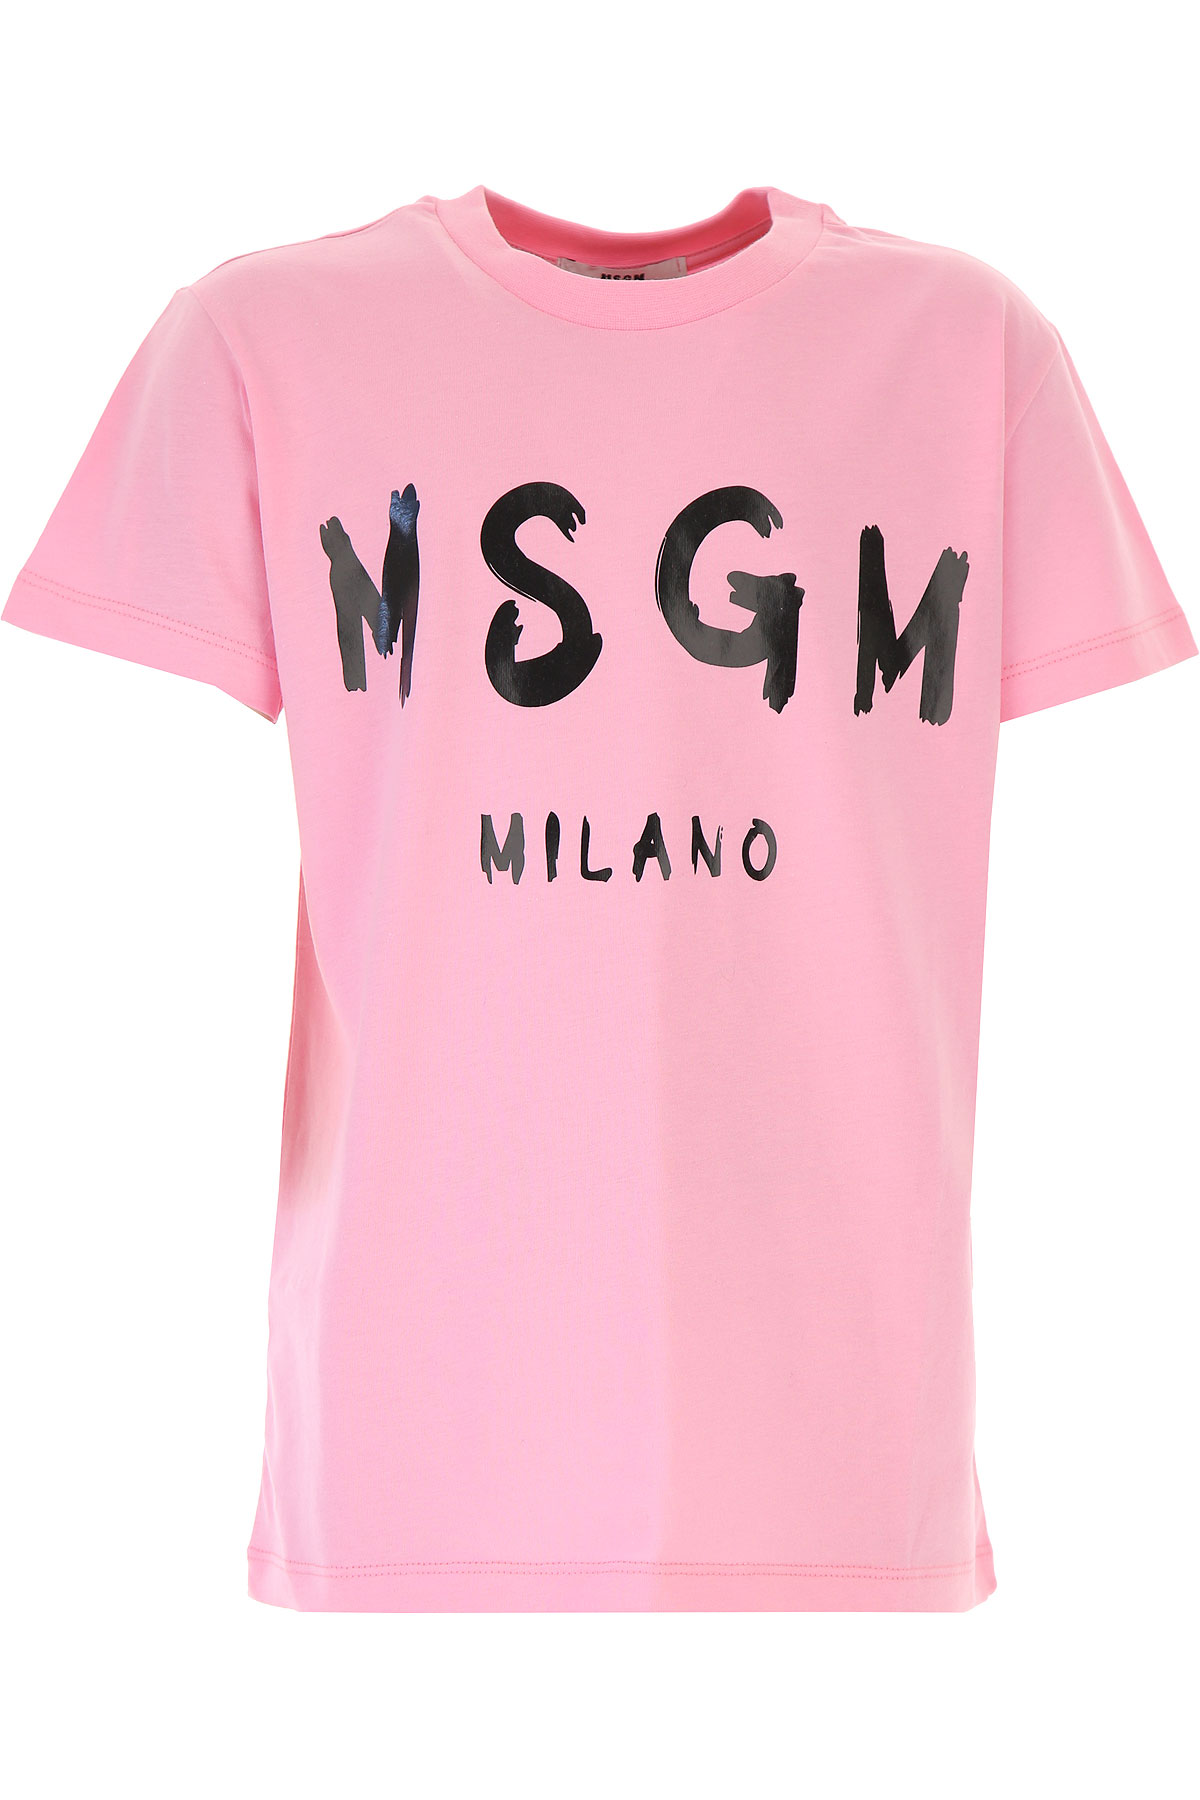 MSGM Kinder T-Shirt für Mädchen Günstig im Sale, Pink, Baumwolle, 2017, 10Y 8Y